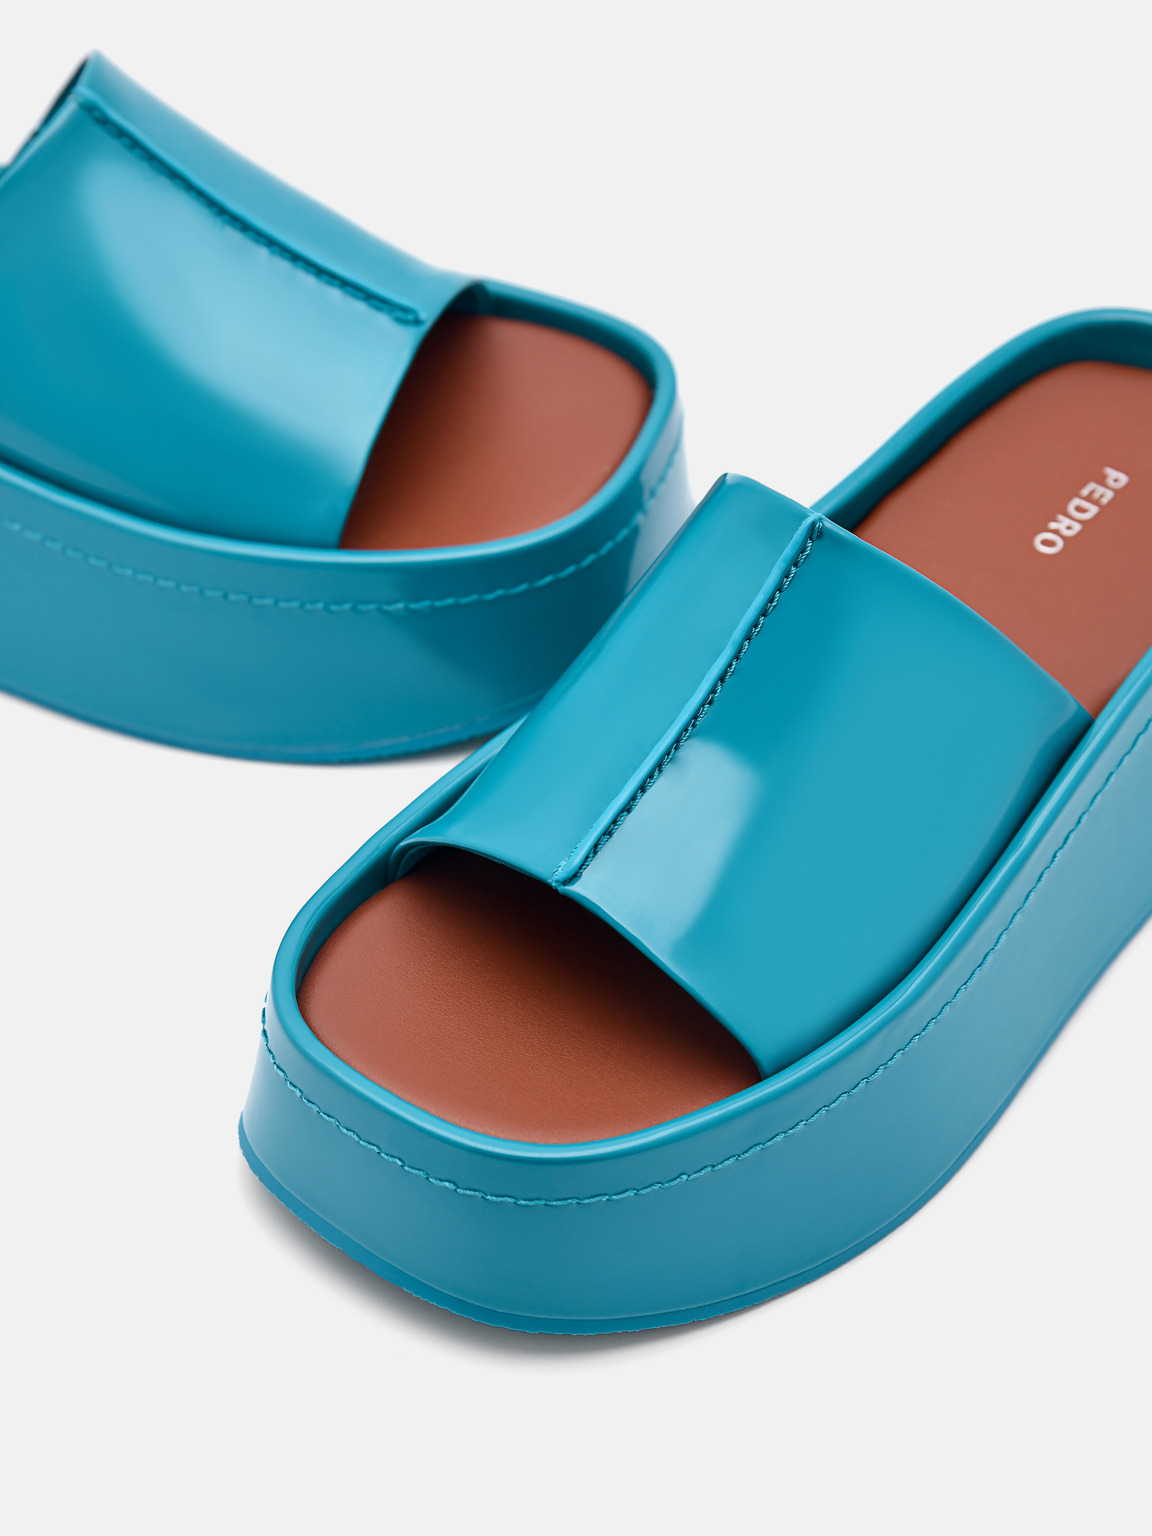 Carmen Platform Sandals, Turquoise